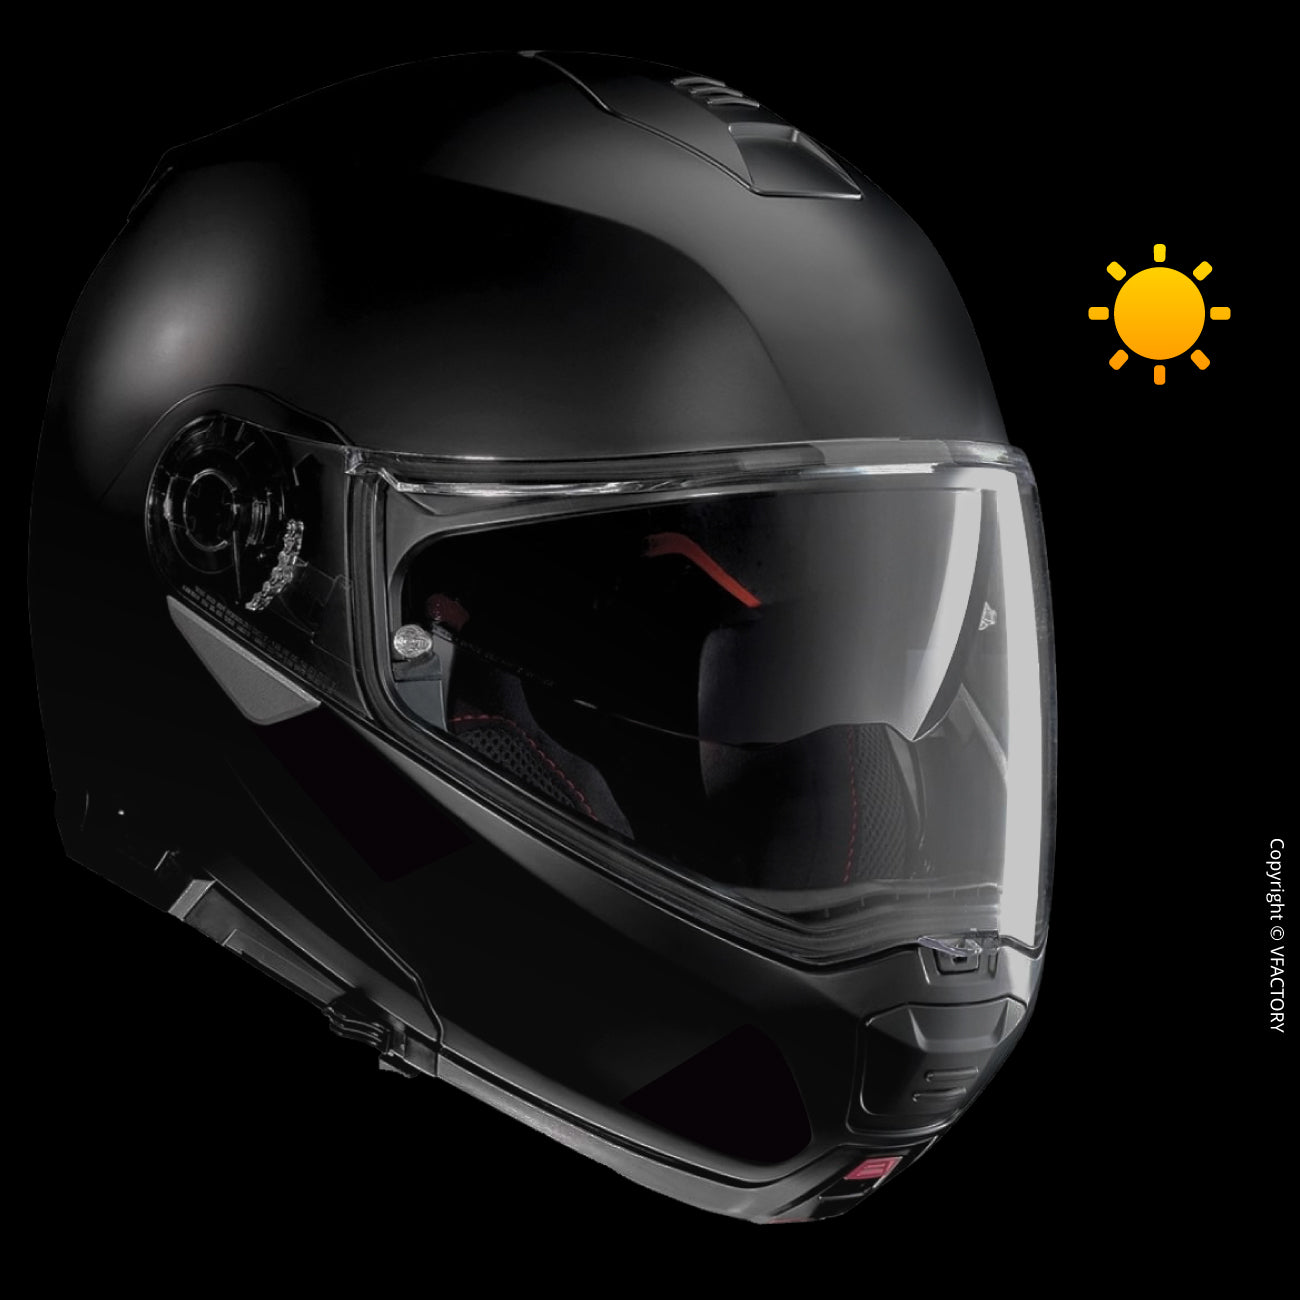 Kit de personnalisation lumineux pour casque moto avec bande